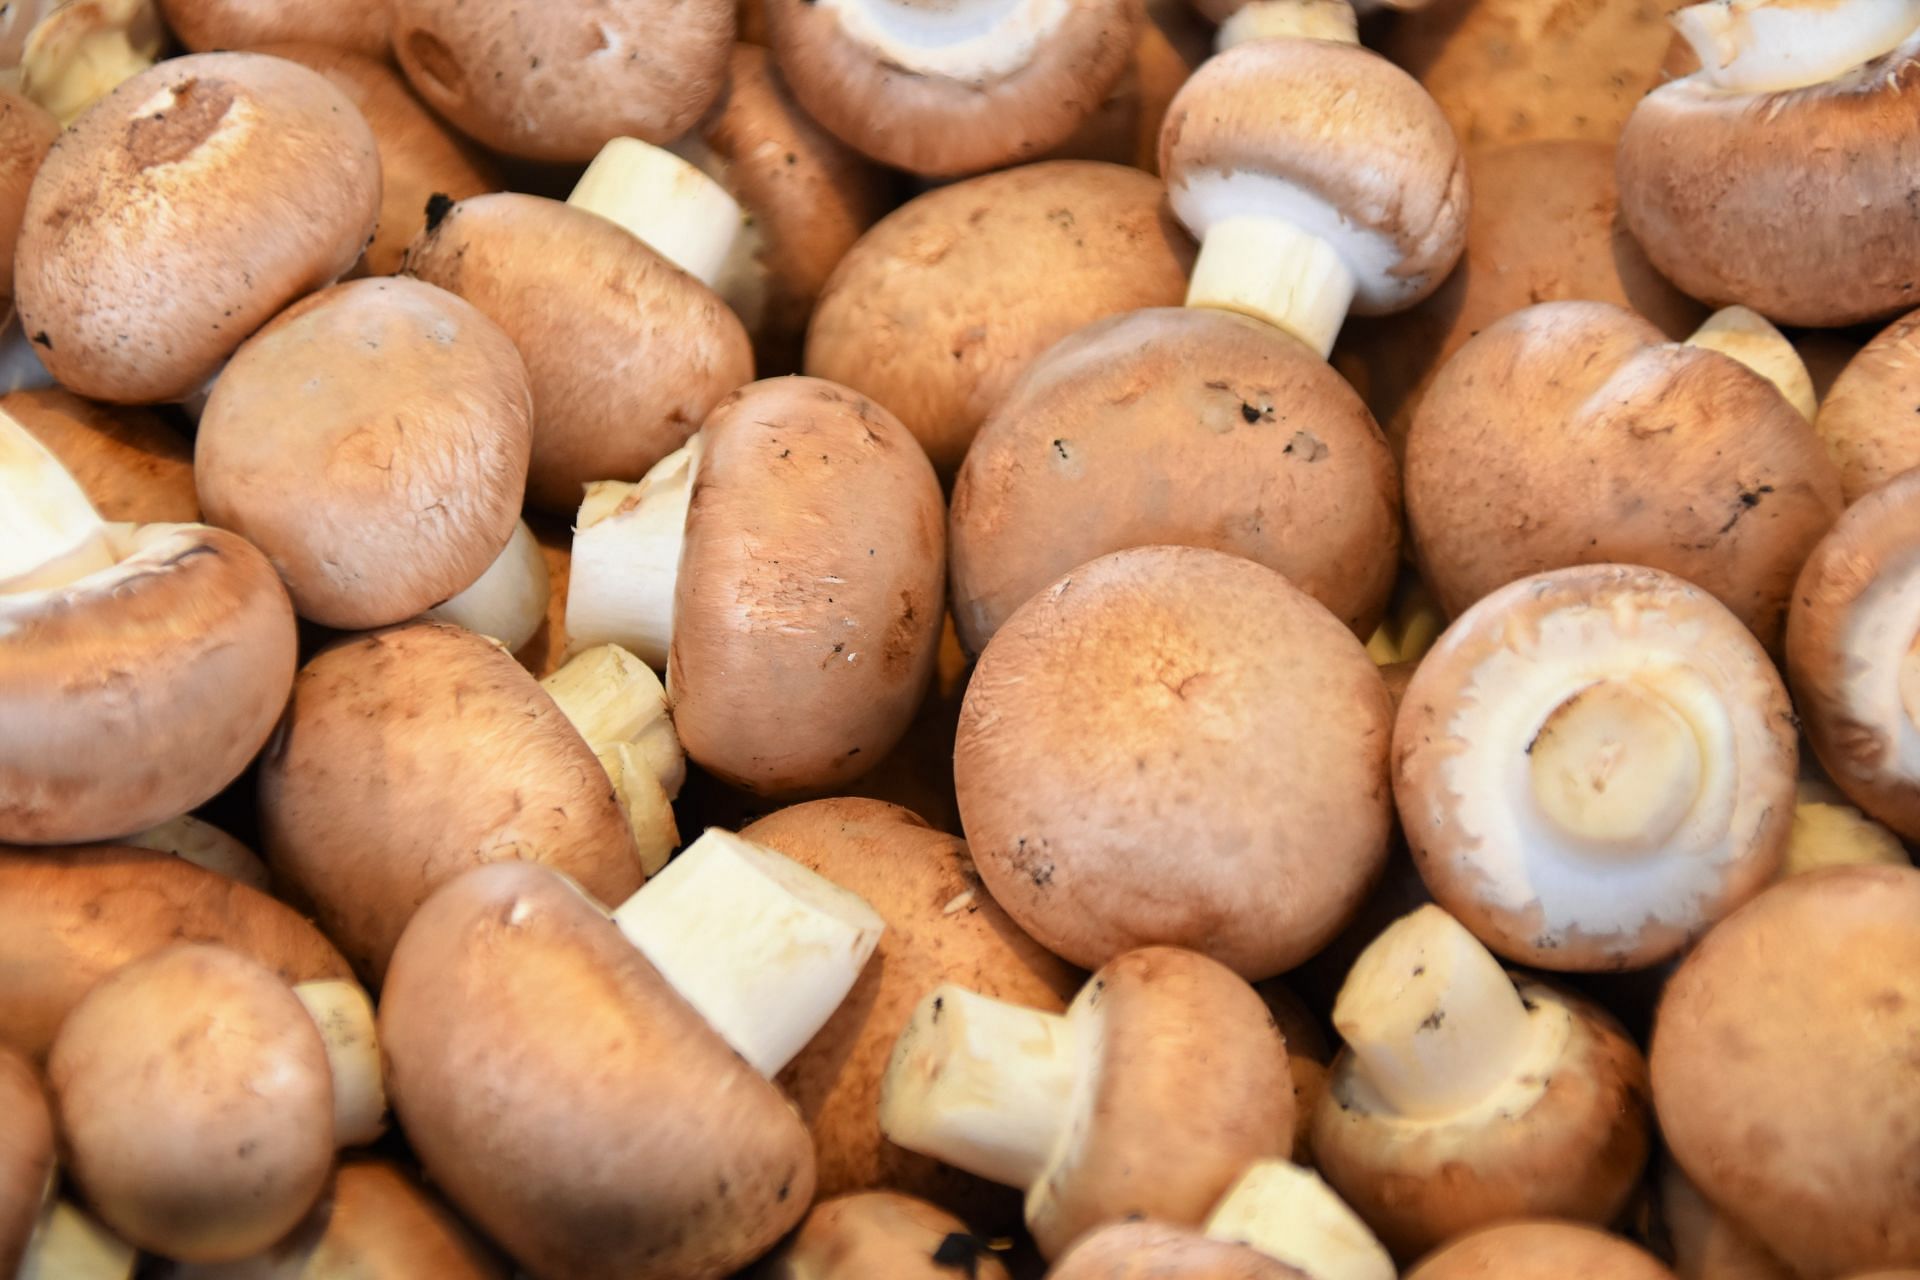 Mushrooms have distinct nutritious profile. (Image via Unsplash/ Waldemar)